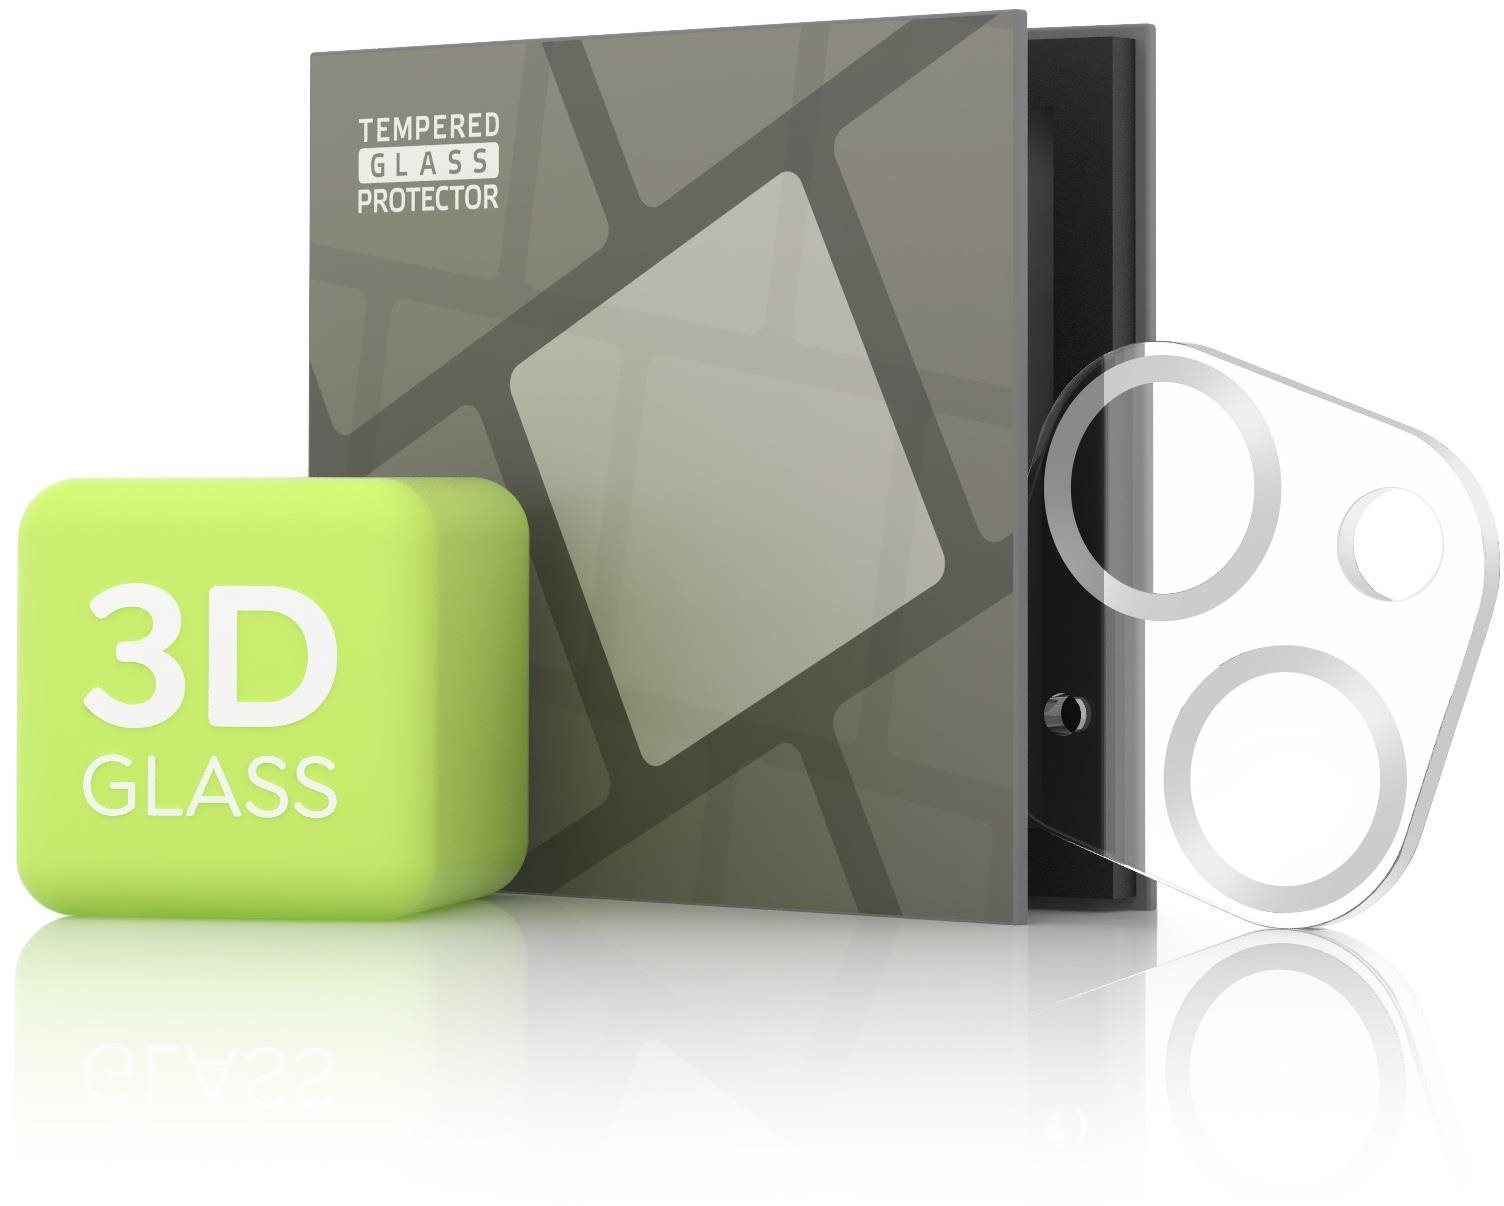 Kamera védő fólia Tempered Glass Protector iPhone 13 mini / 13 kamerához - 3D Glass, ezüst (Case friendly)